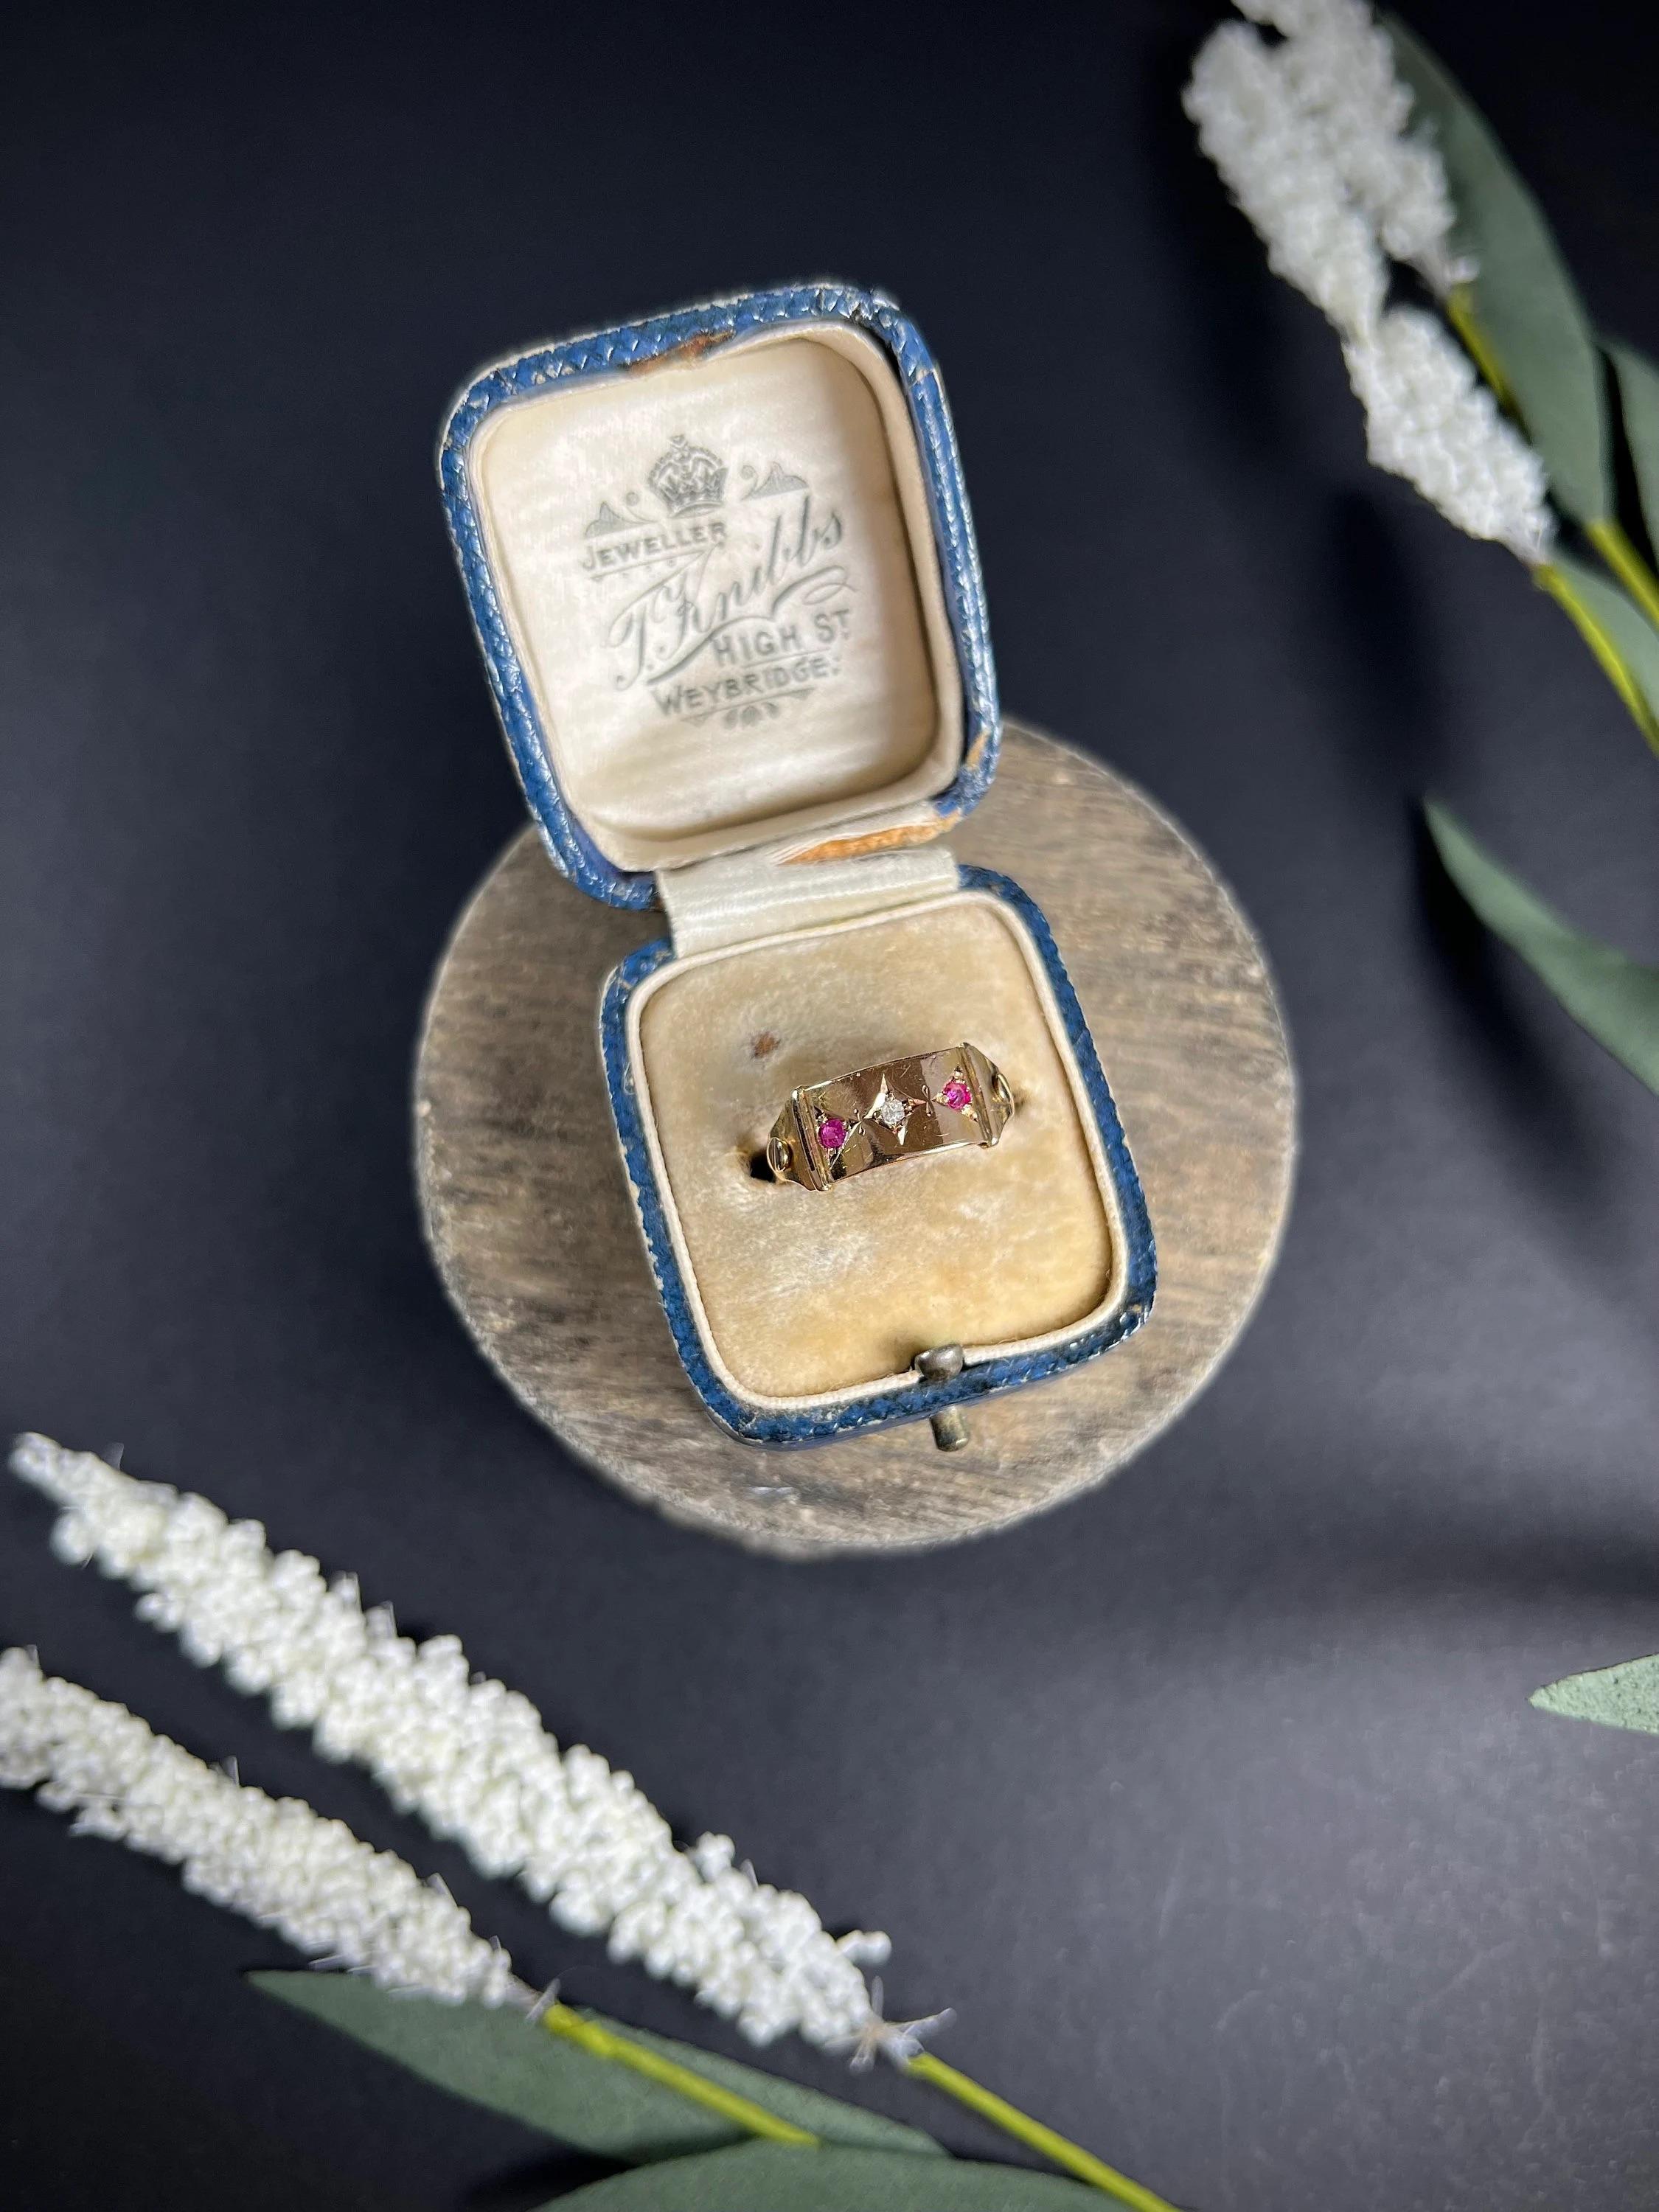 Antiker Ring 

15ct Gold gestempelt 

Gepunzt Chester 1885

Schöner, viktorianischer Ring. Fast wie ein Gürtel oder eine Gürtelschnalle - mit seinen verschraubten Schultern, die die rubin- und diamantbesetzte Platte am Gelbgoldband befestigen. 

Die